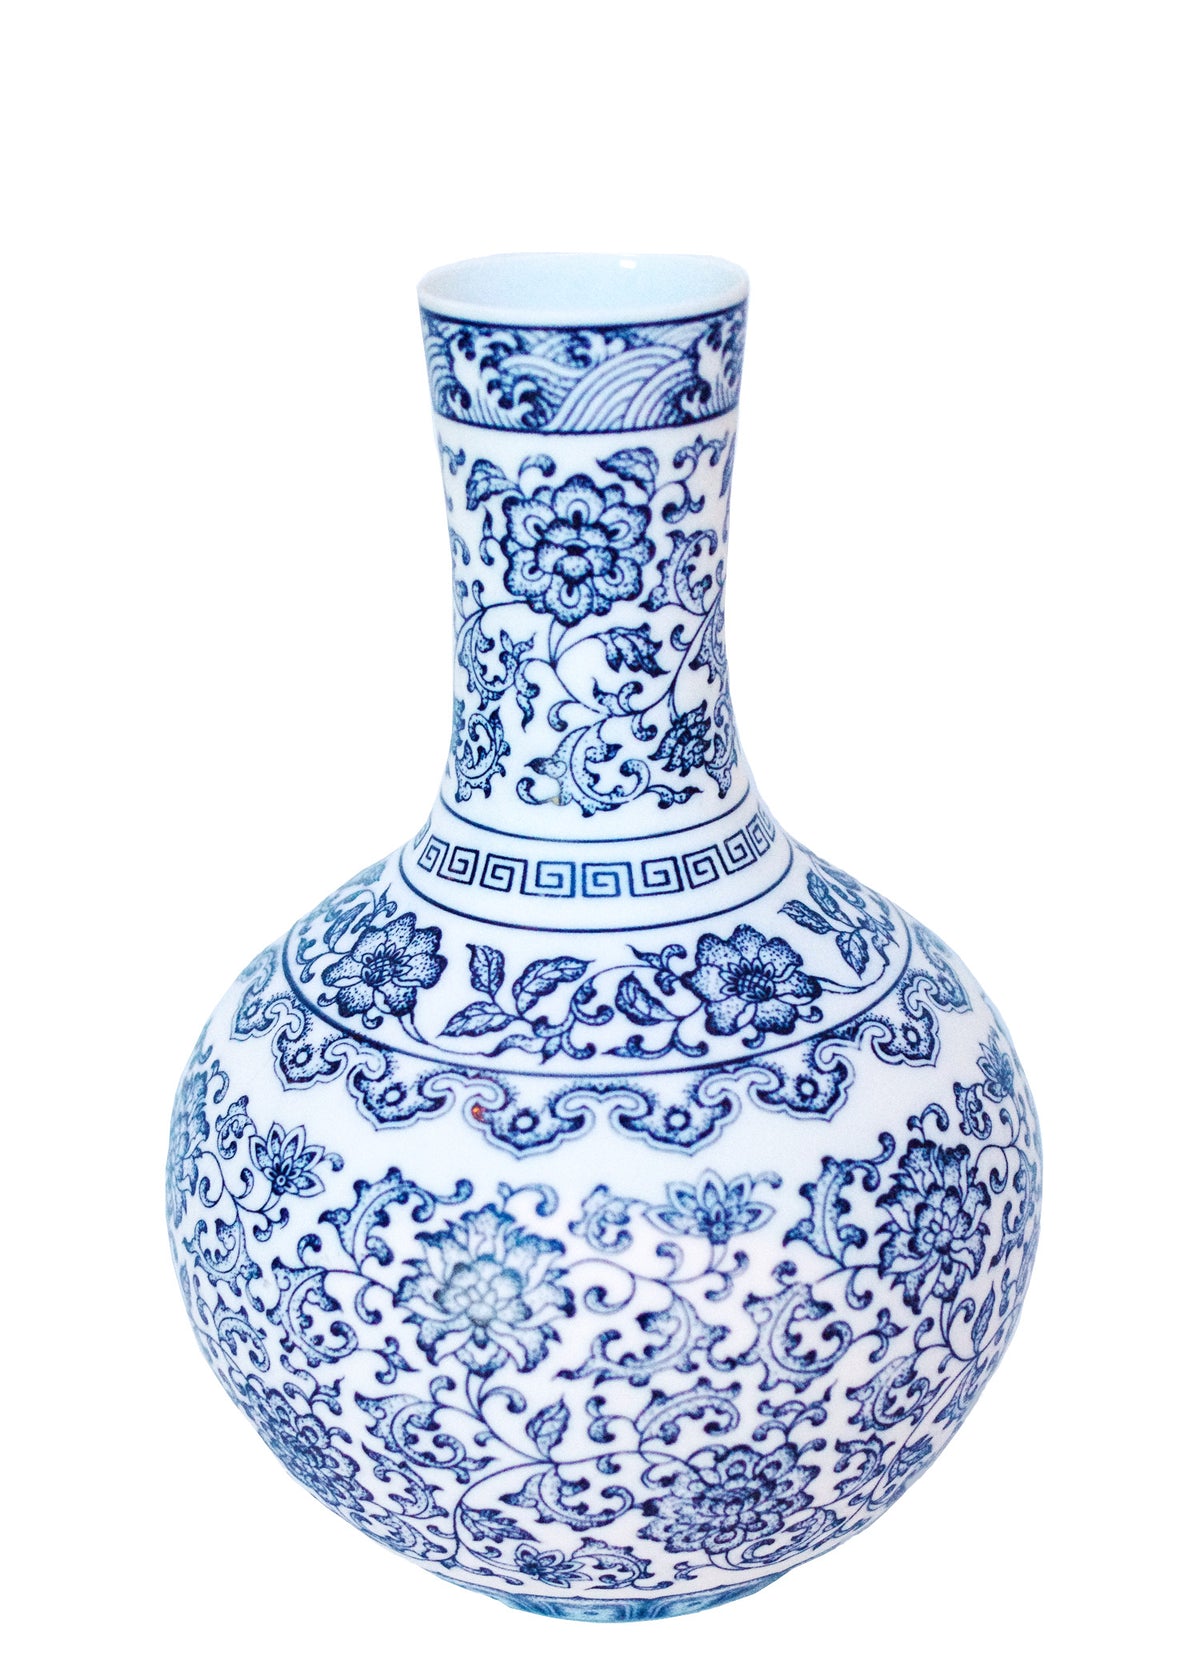 Chinoiserie Porcelain Vase - RSVP Style